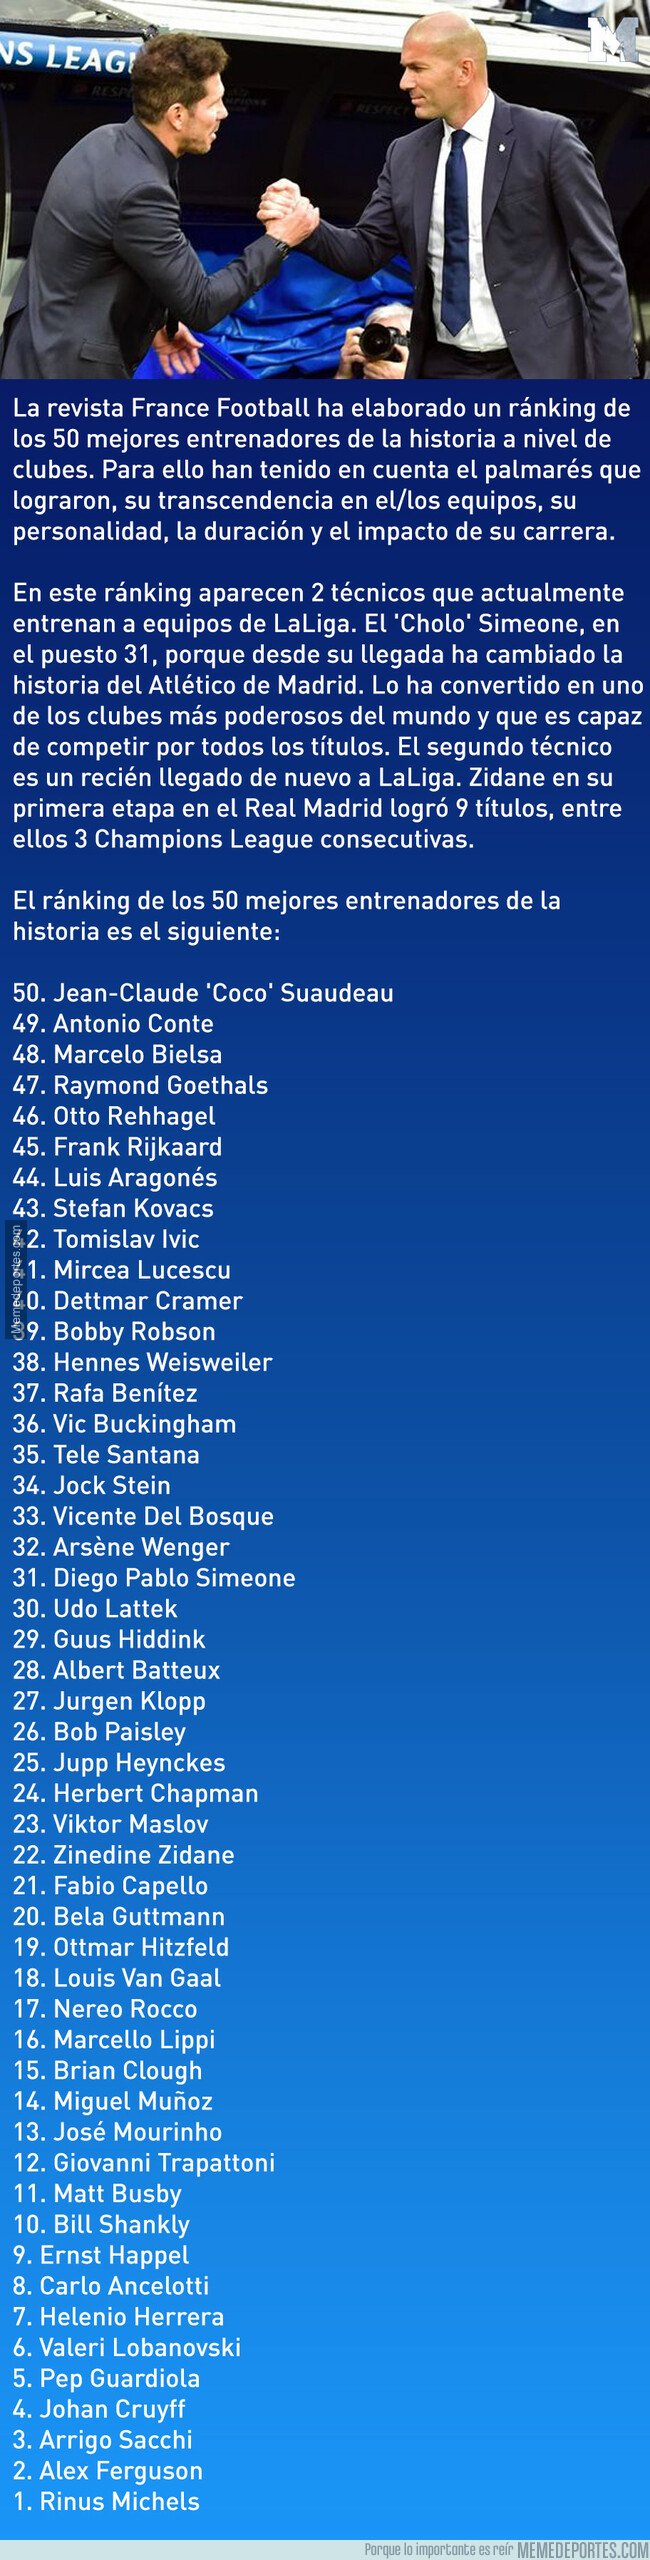 1068927 - Los mejores 50 entrenadores de la historia según France Football